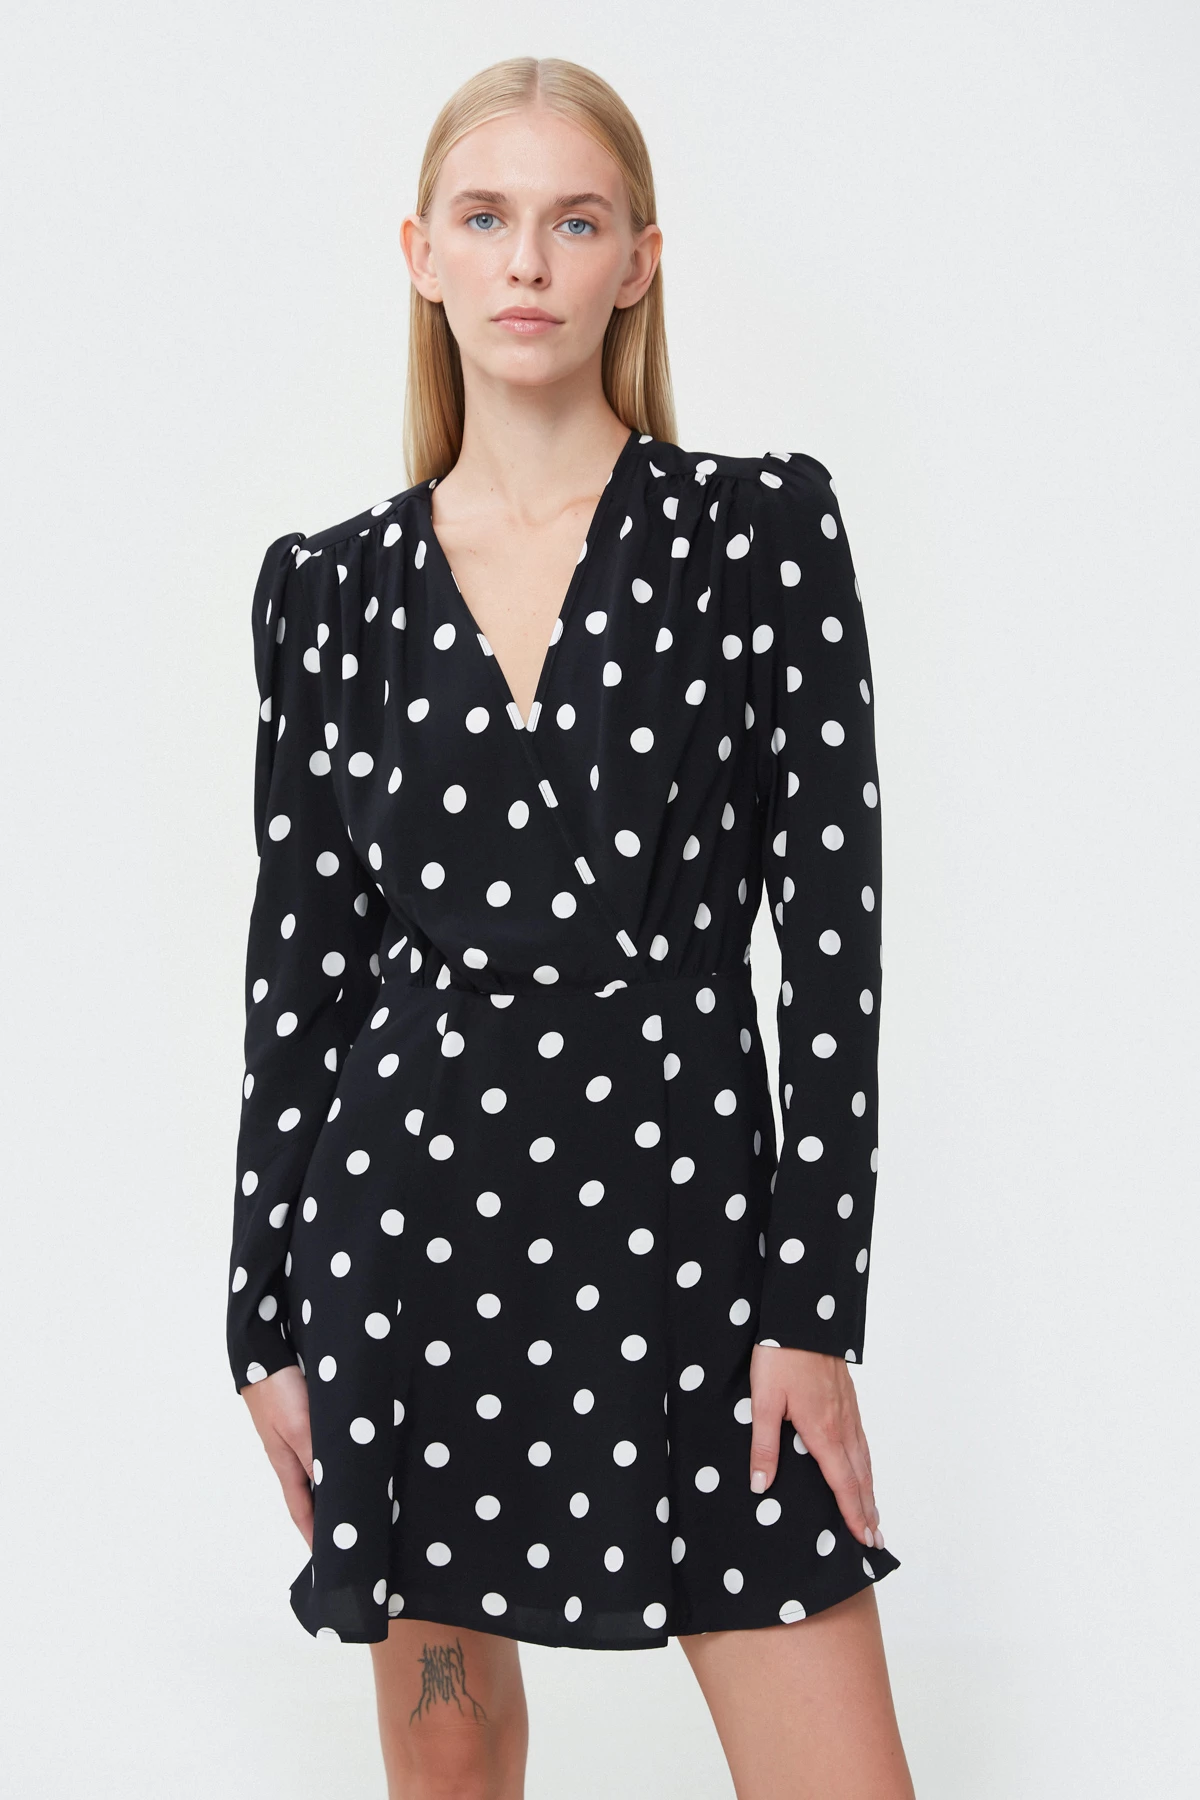 Short black viscose dress with polka dot print, photo 1